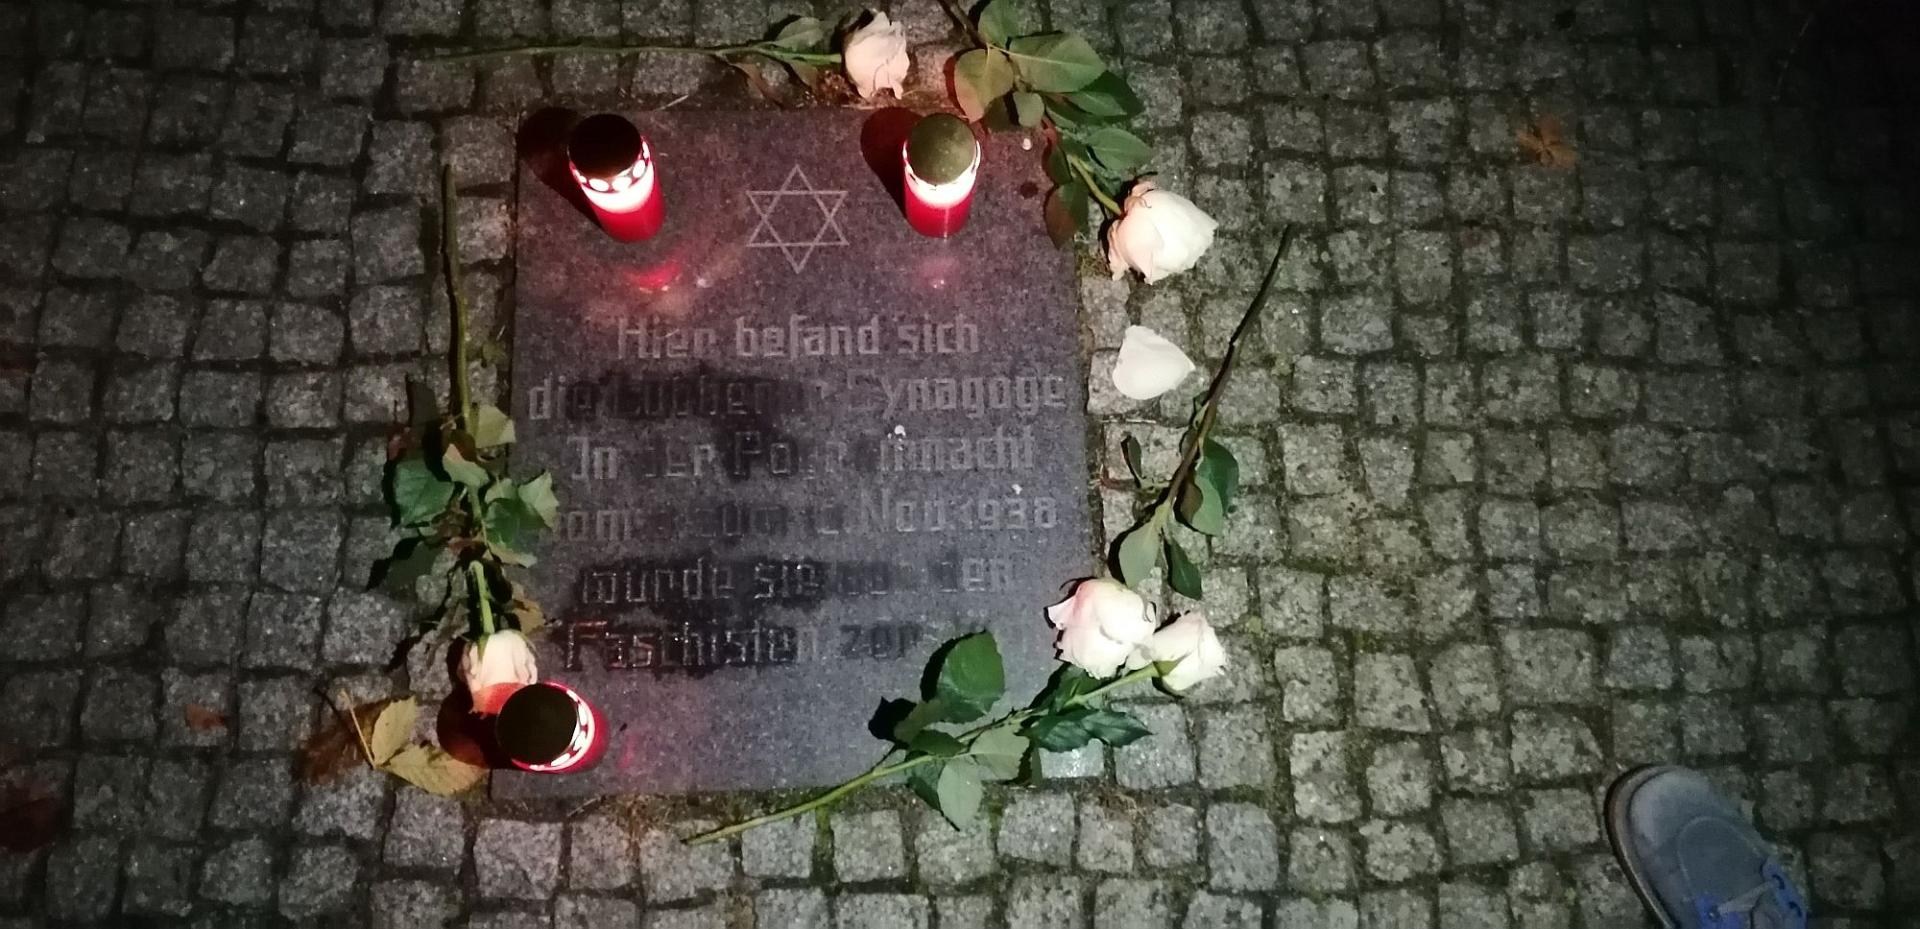 Der Gedenkabend in Lübben wurde am ehemaligen Standort der Lübbener Synagoge beendet.